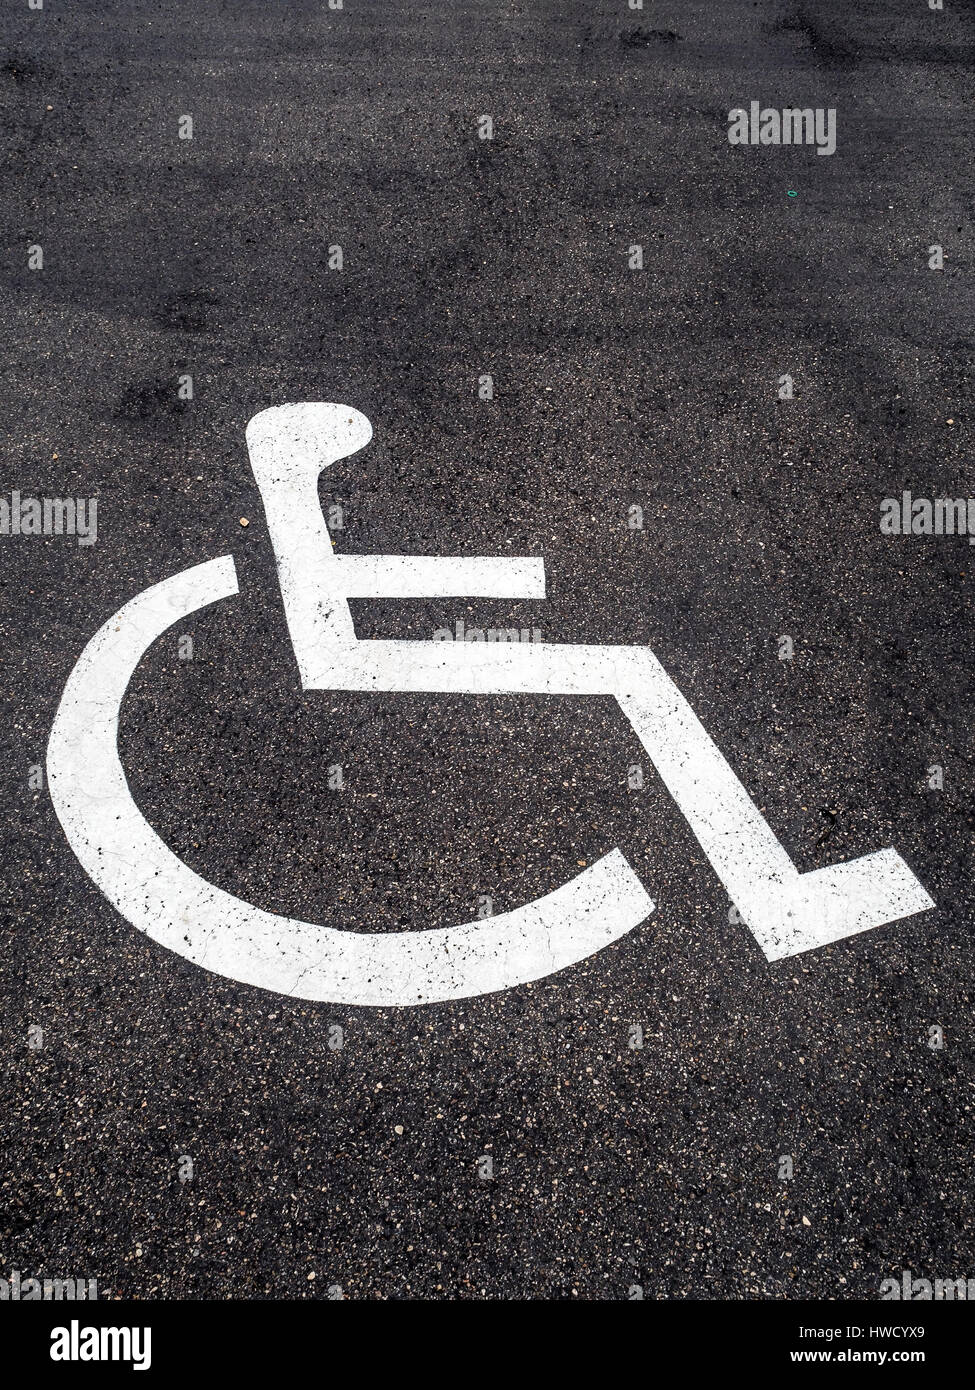 Un fauteuil roulant est à droite sur une place de stationnement pour personnes à mobilité réduite., Ein Rollstuhl ist auf einem Parkplatz für behinderte angebracht. Banque D'Images